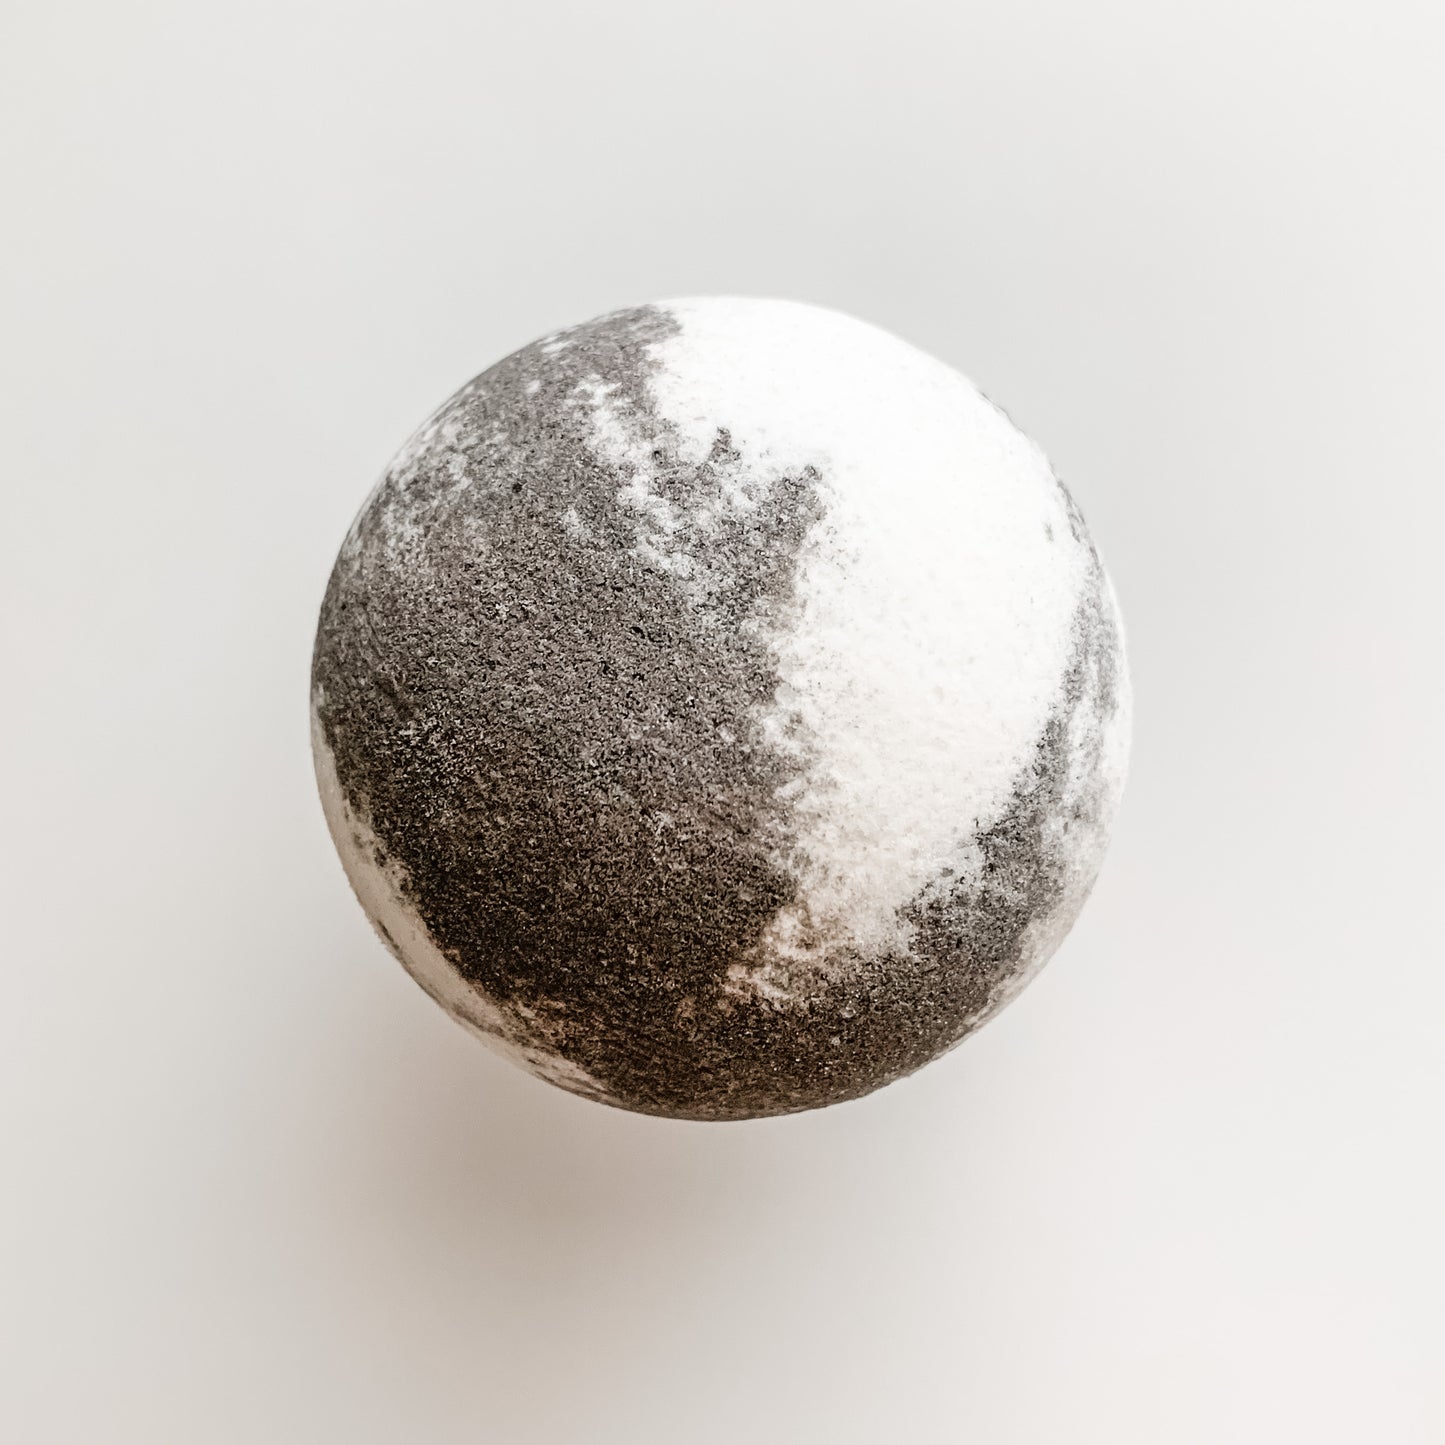 Stone Mountain Bath Bomb, grey and white